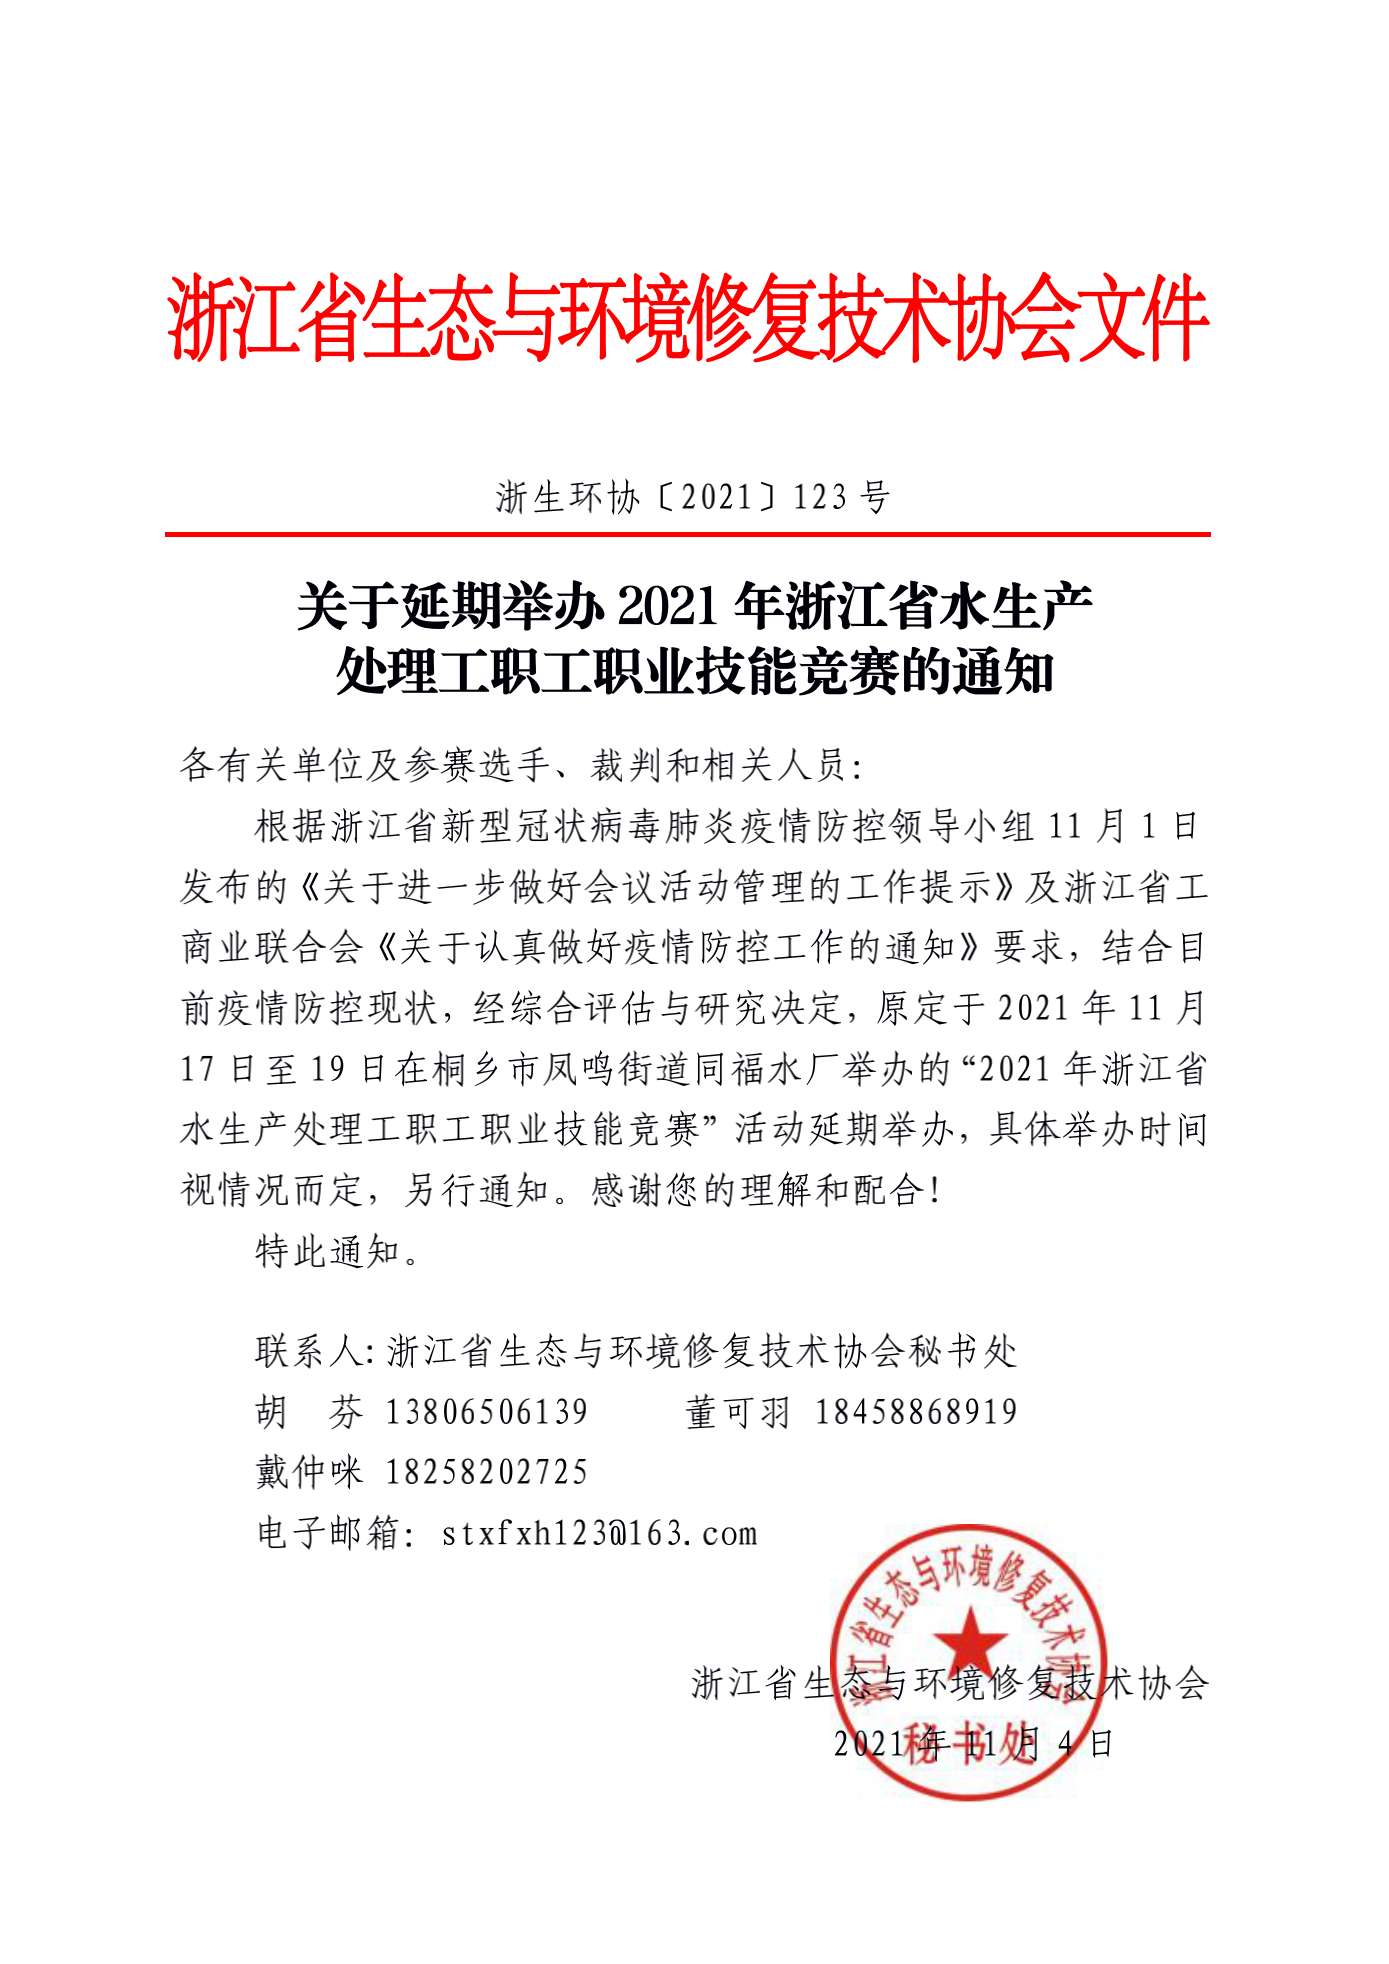 关于延期举办2021年浙江省水生产处理工职工职业技能竞赛的通知_00.png